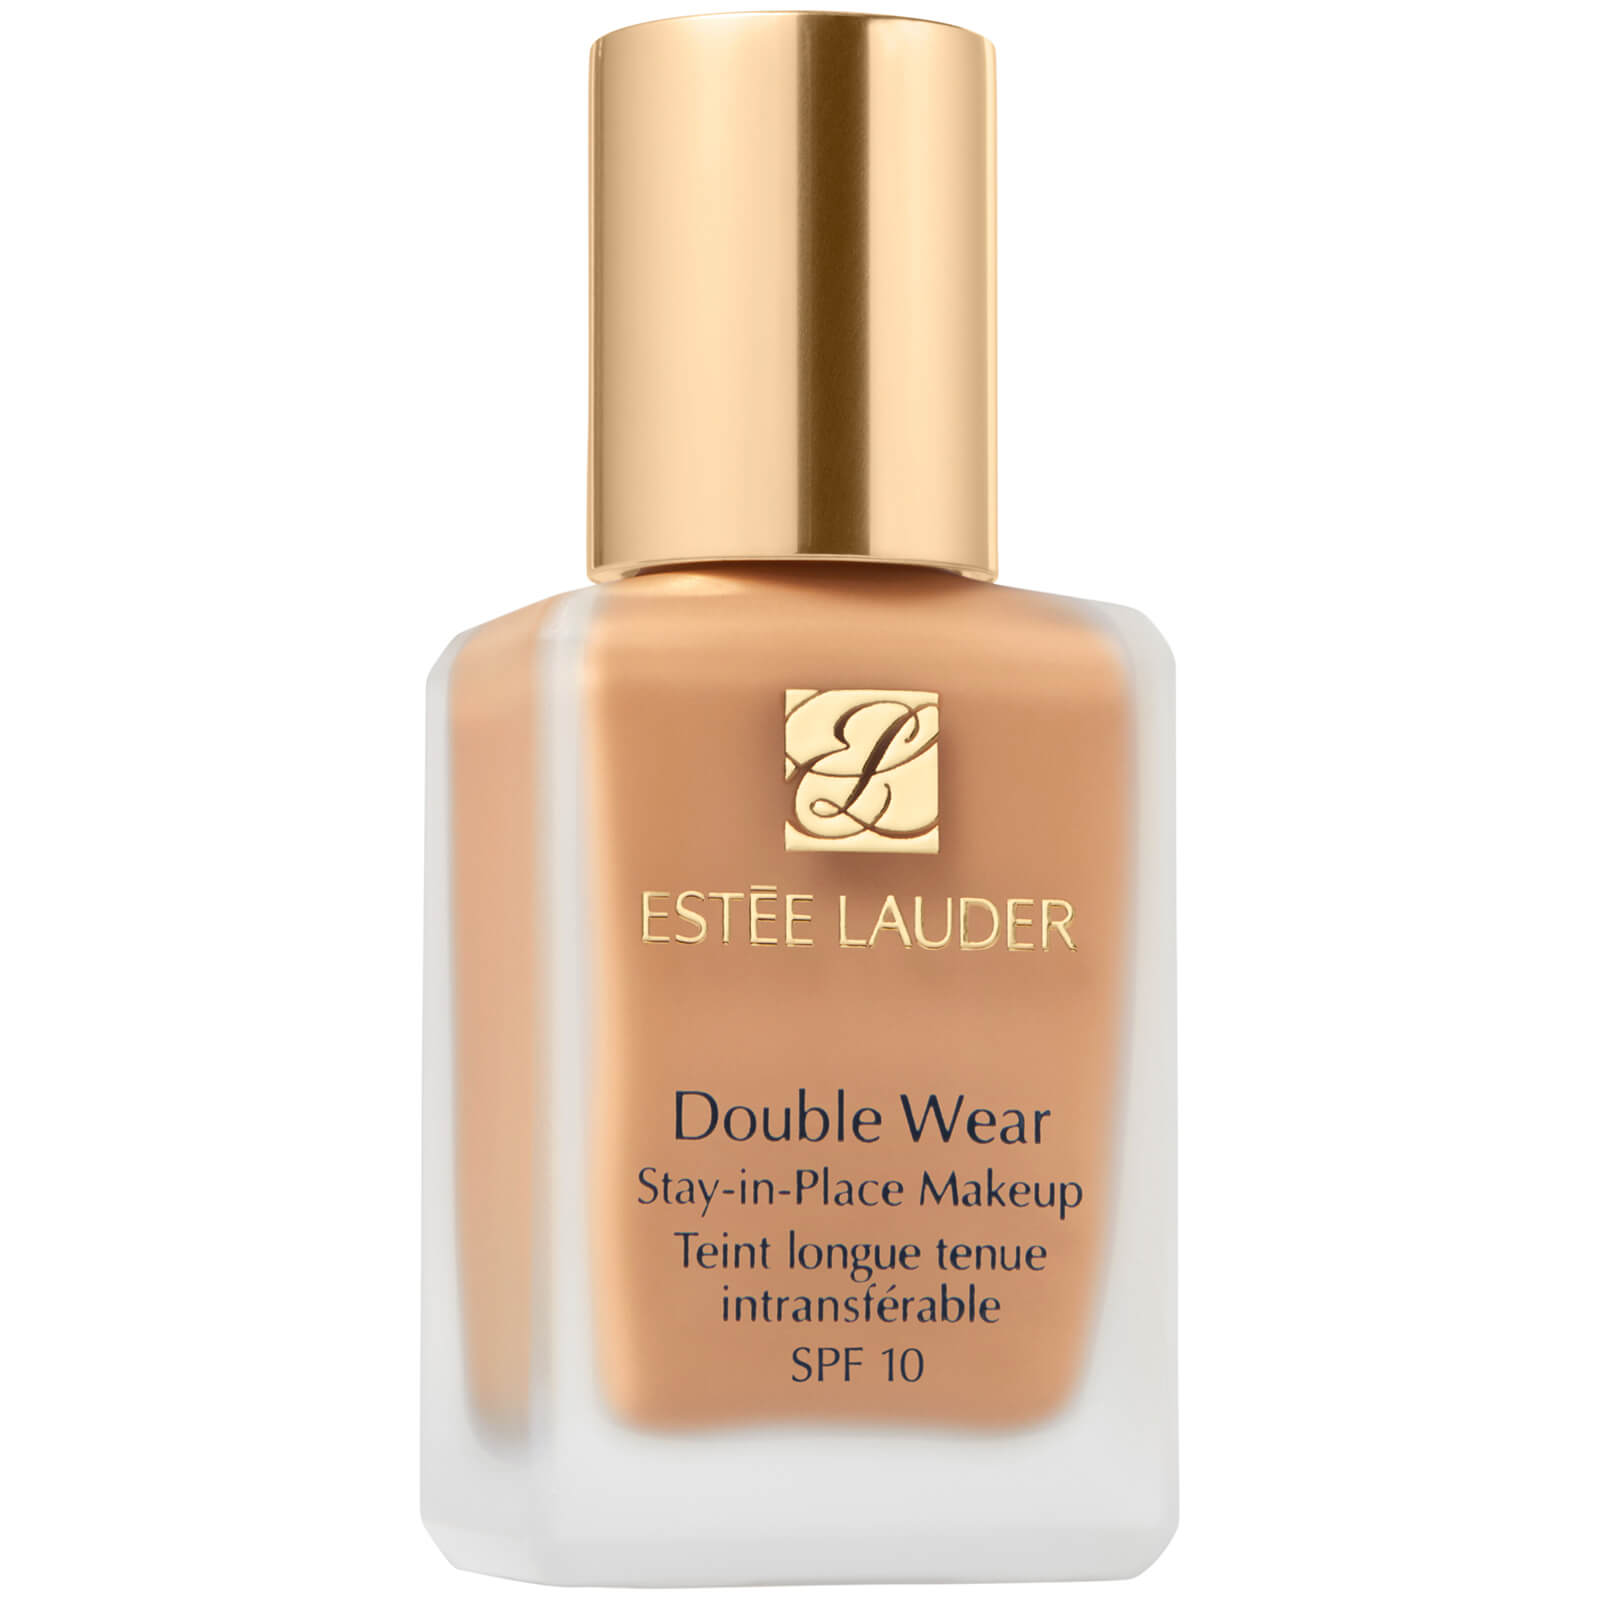 Makeup Double Wear Stay-In-Place Estée Lauder 30ml (varie tonalità) - 4W1 Honey Bronze